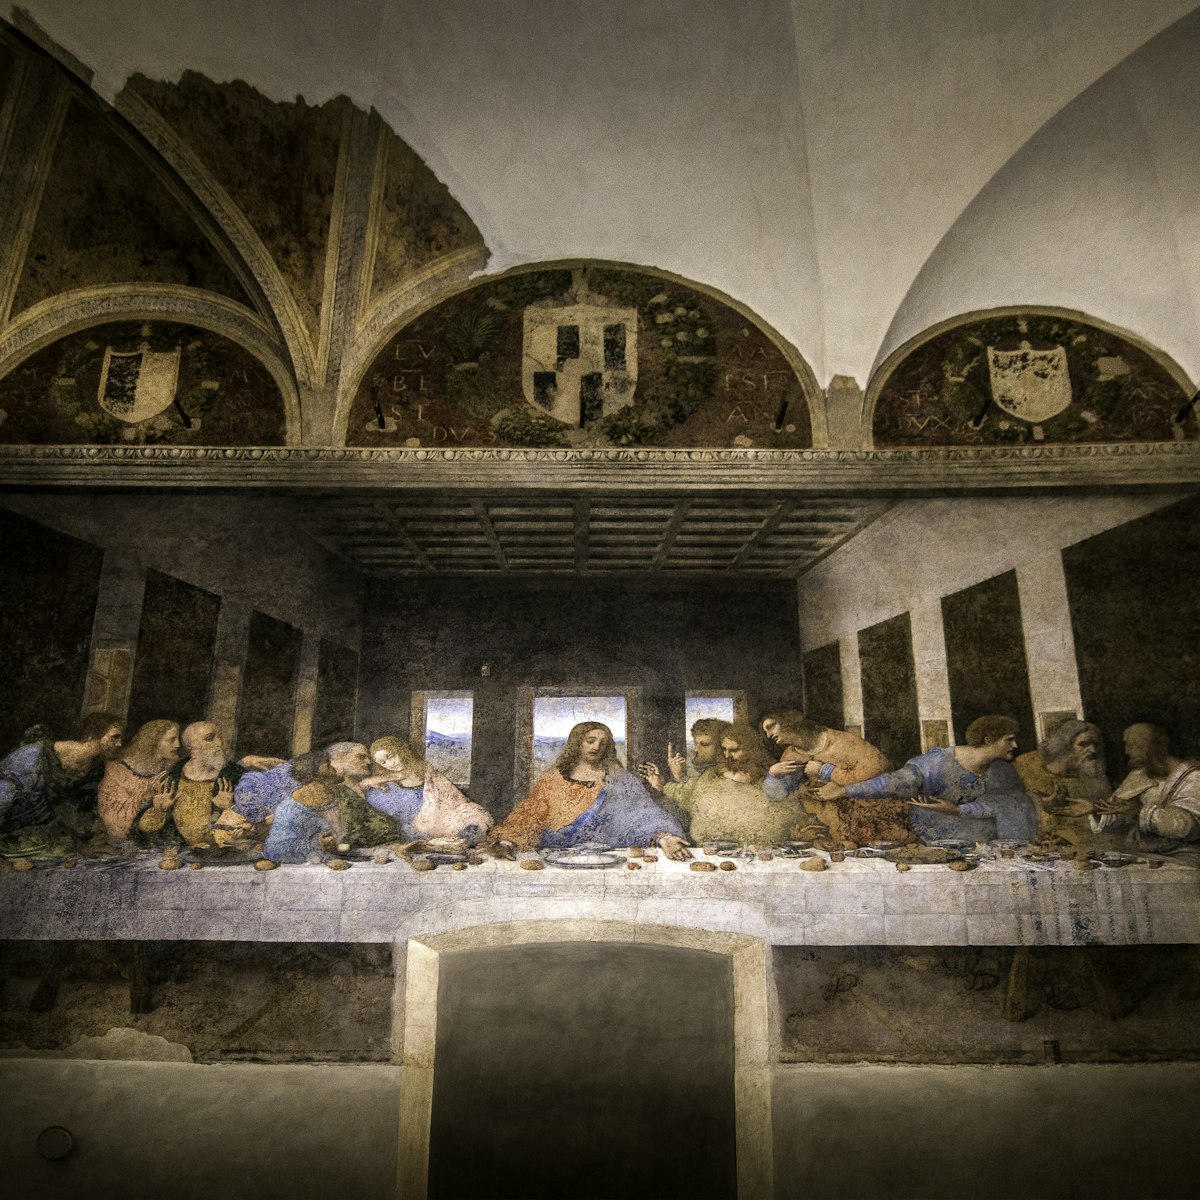 Leonardo Da Vinci's 'The Last Supper' in the Santa Maria delle Grazie.